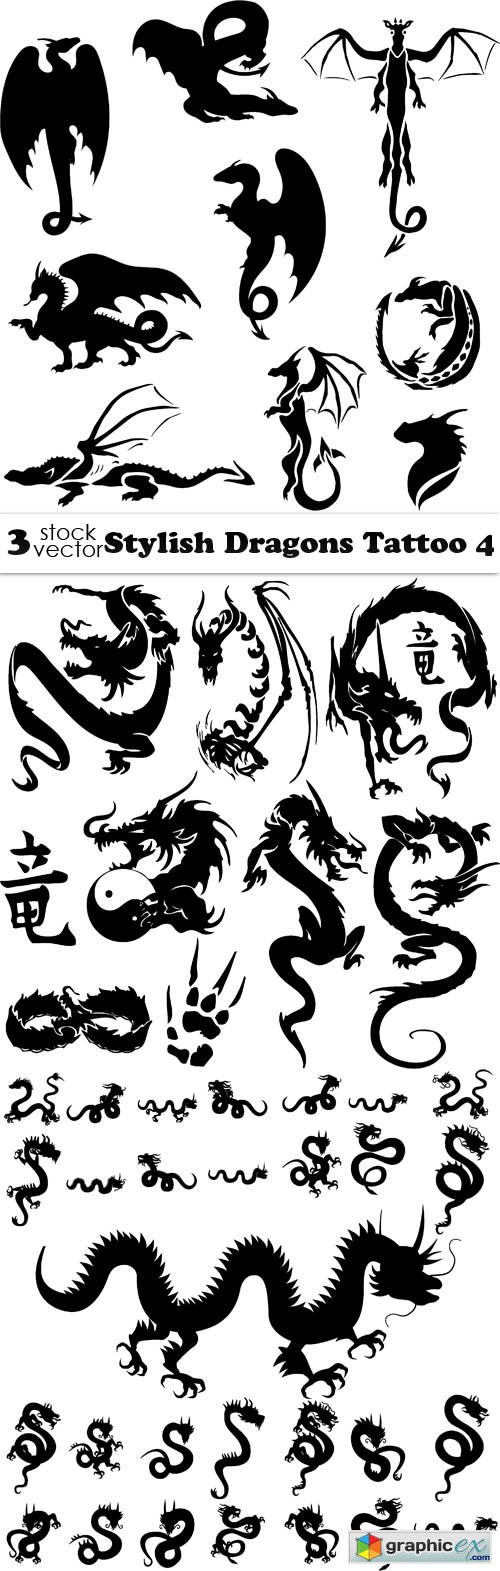 Stylish Dragons Tattoo 4